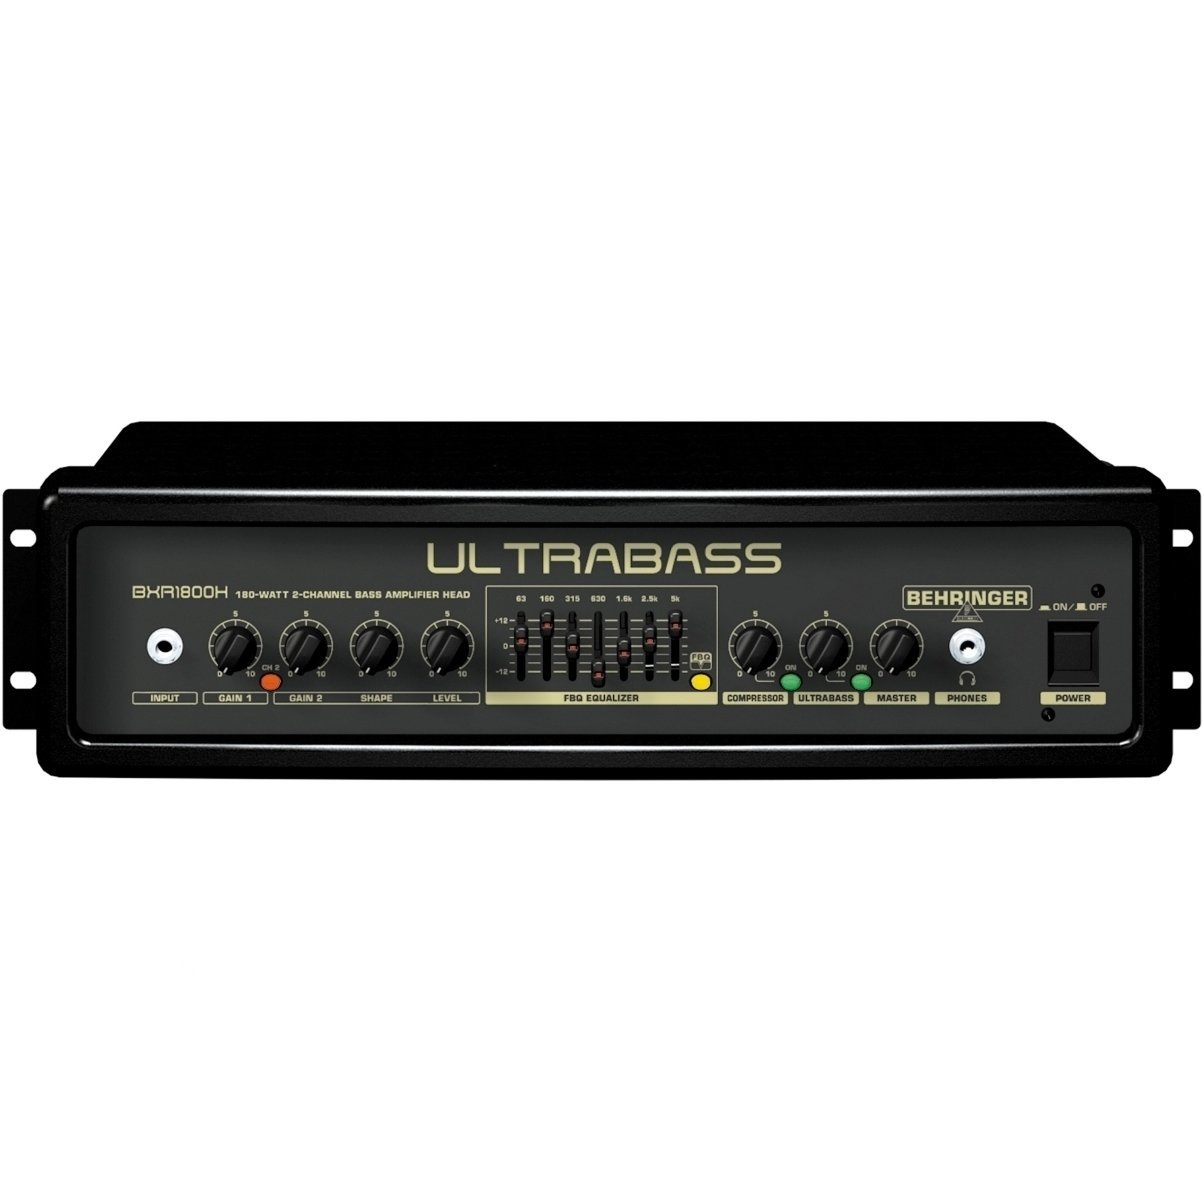 Solid-State Bass Amplifier Behringer BXR 1800 H ULTRABASS